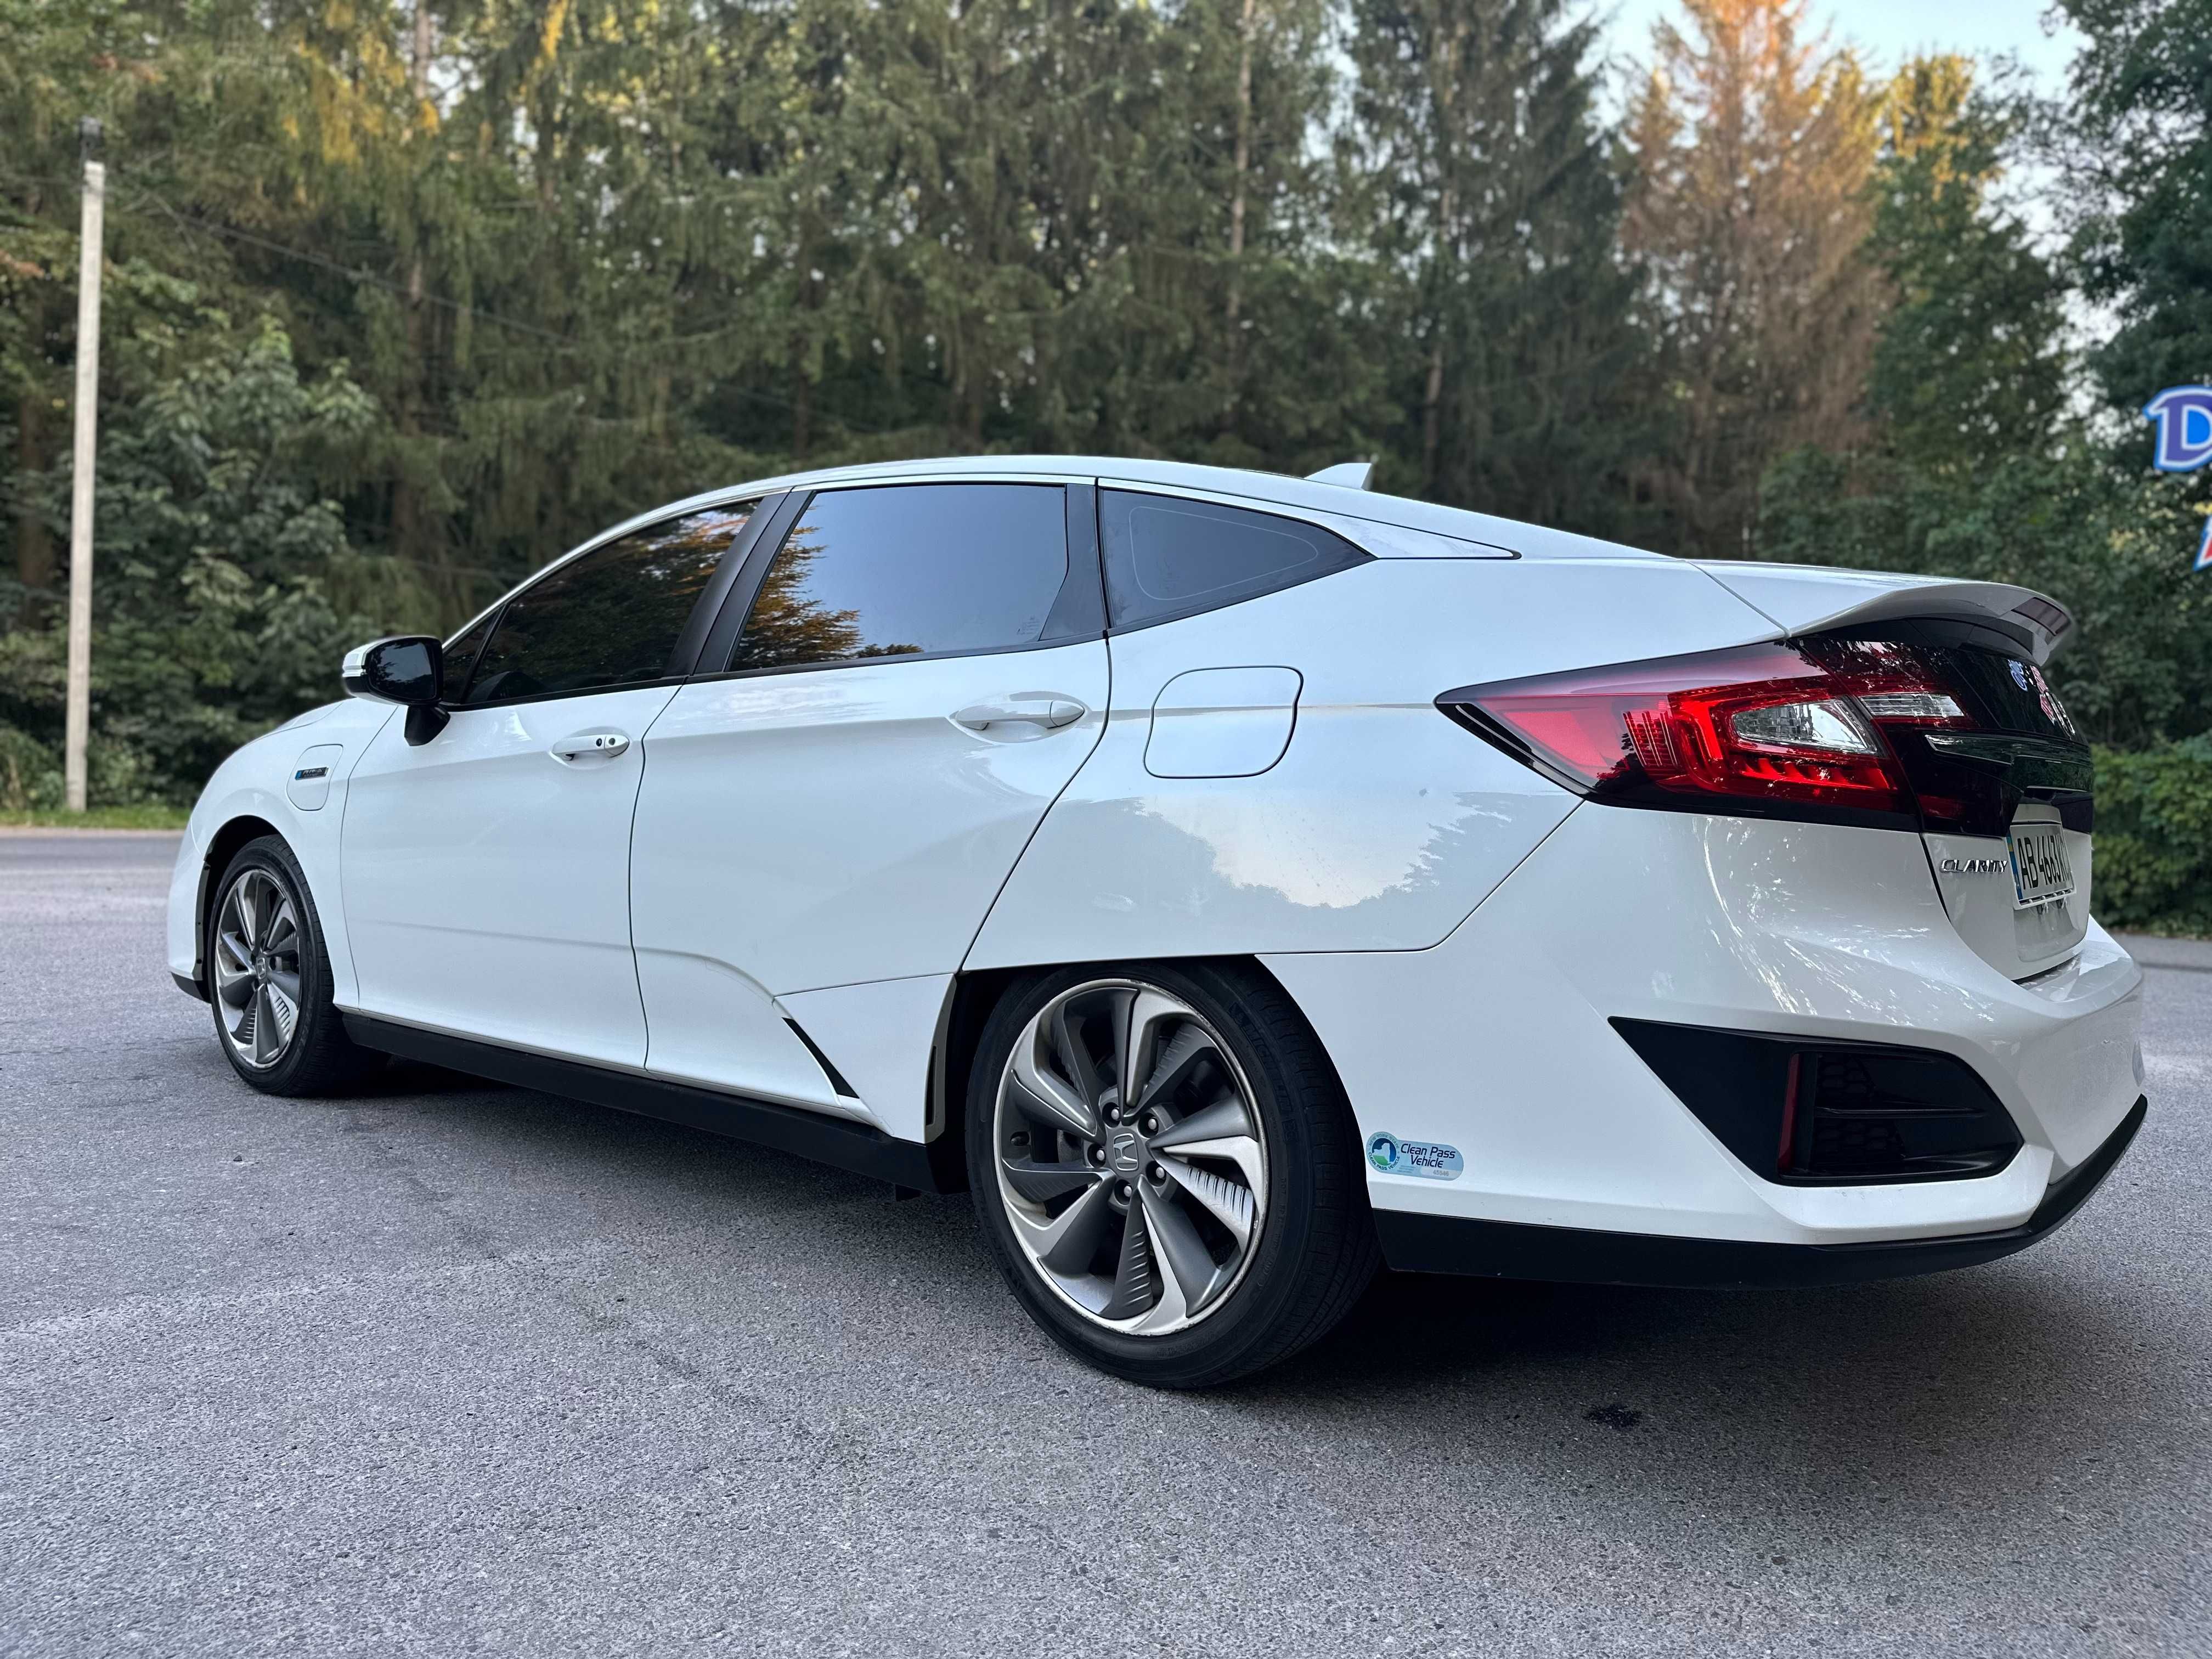 Honda Clarity 2018